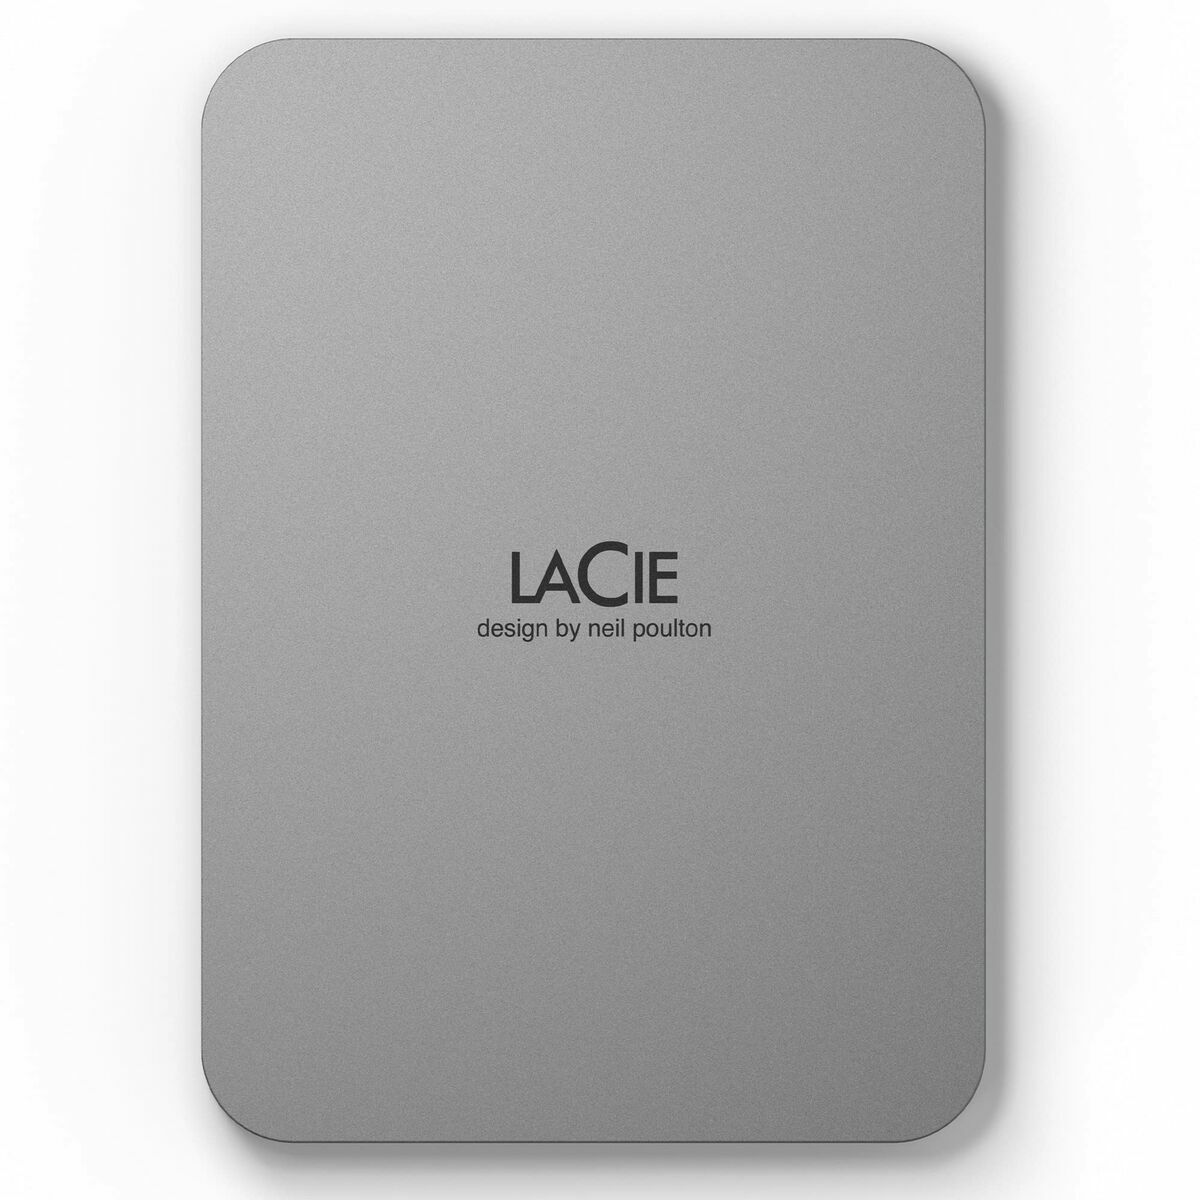 Ekstern harddisk LaCie STLP1000400 Sølvfarvet HDD